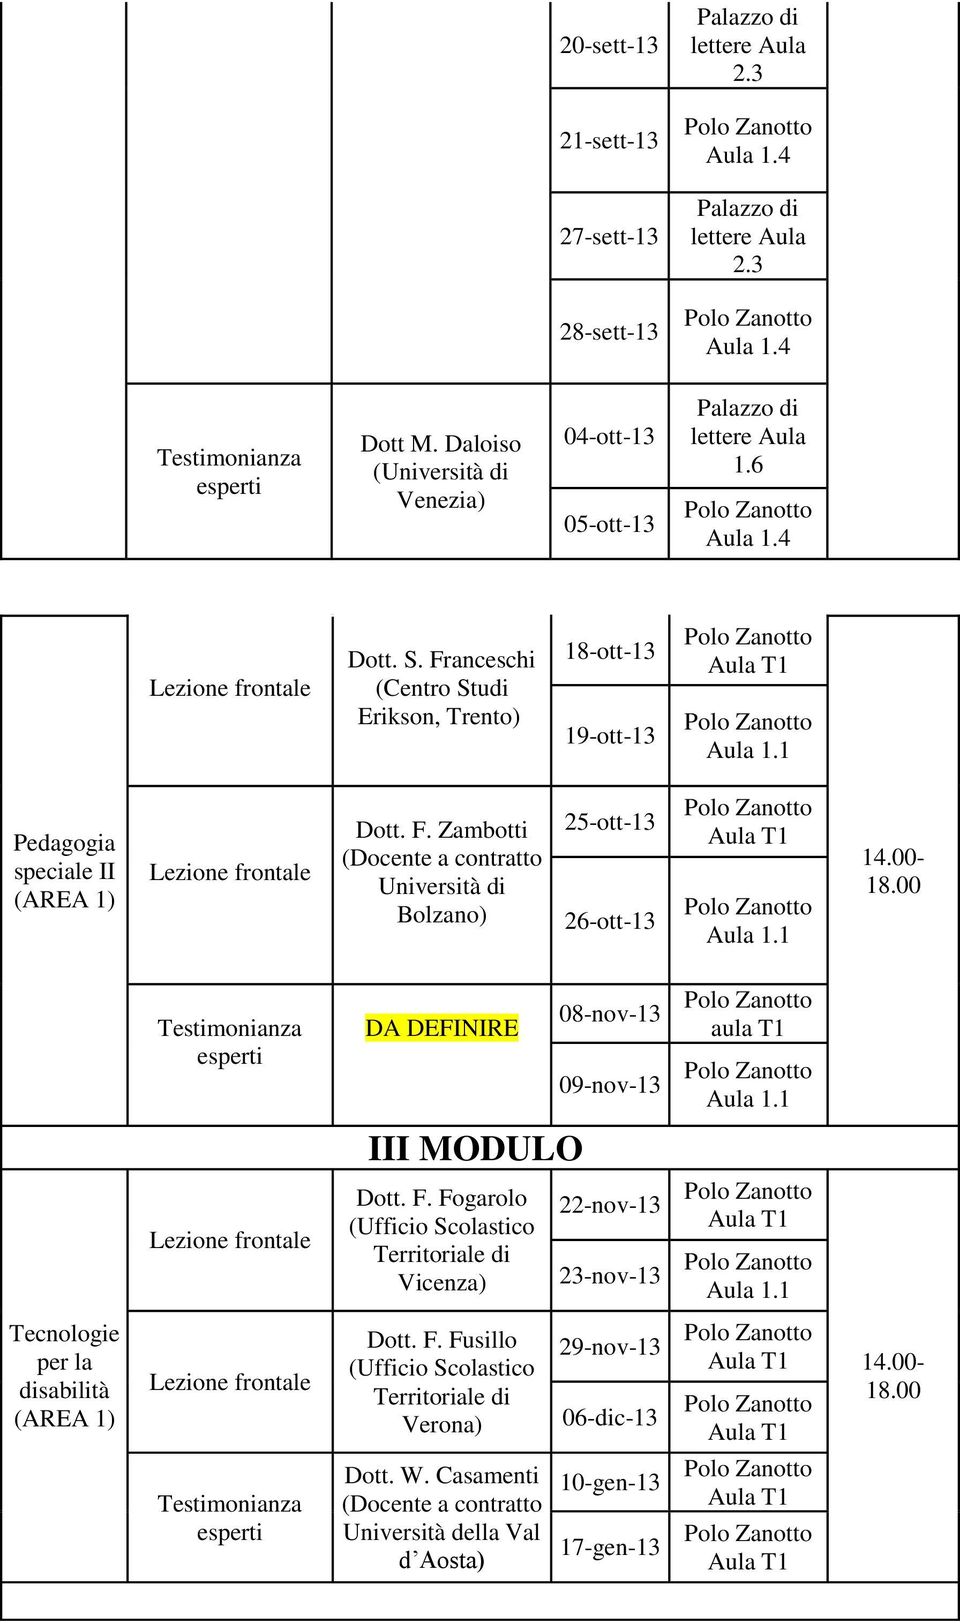 Zambotti (Docente a contratto Università di Bolzano) 25-ott- 26-ott- 08-nov- 09-nov- III MODULO Dott. F.